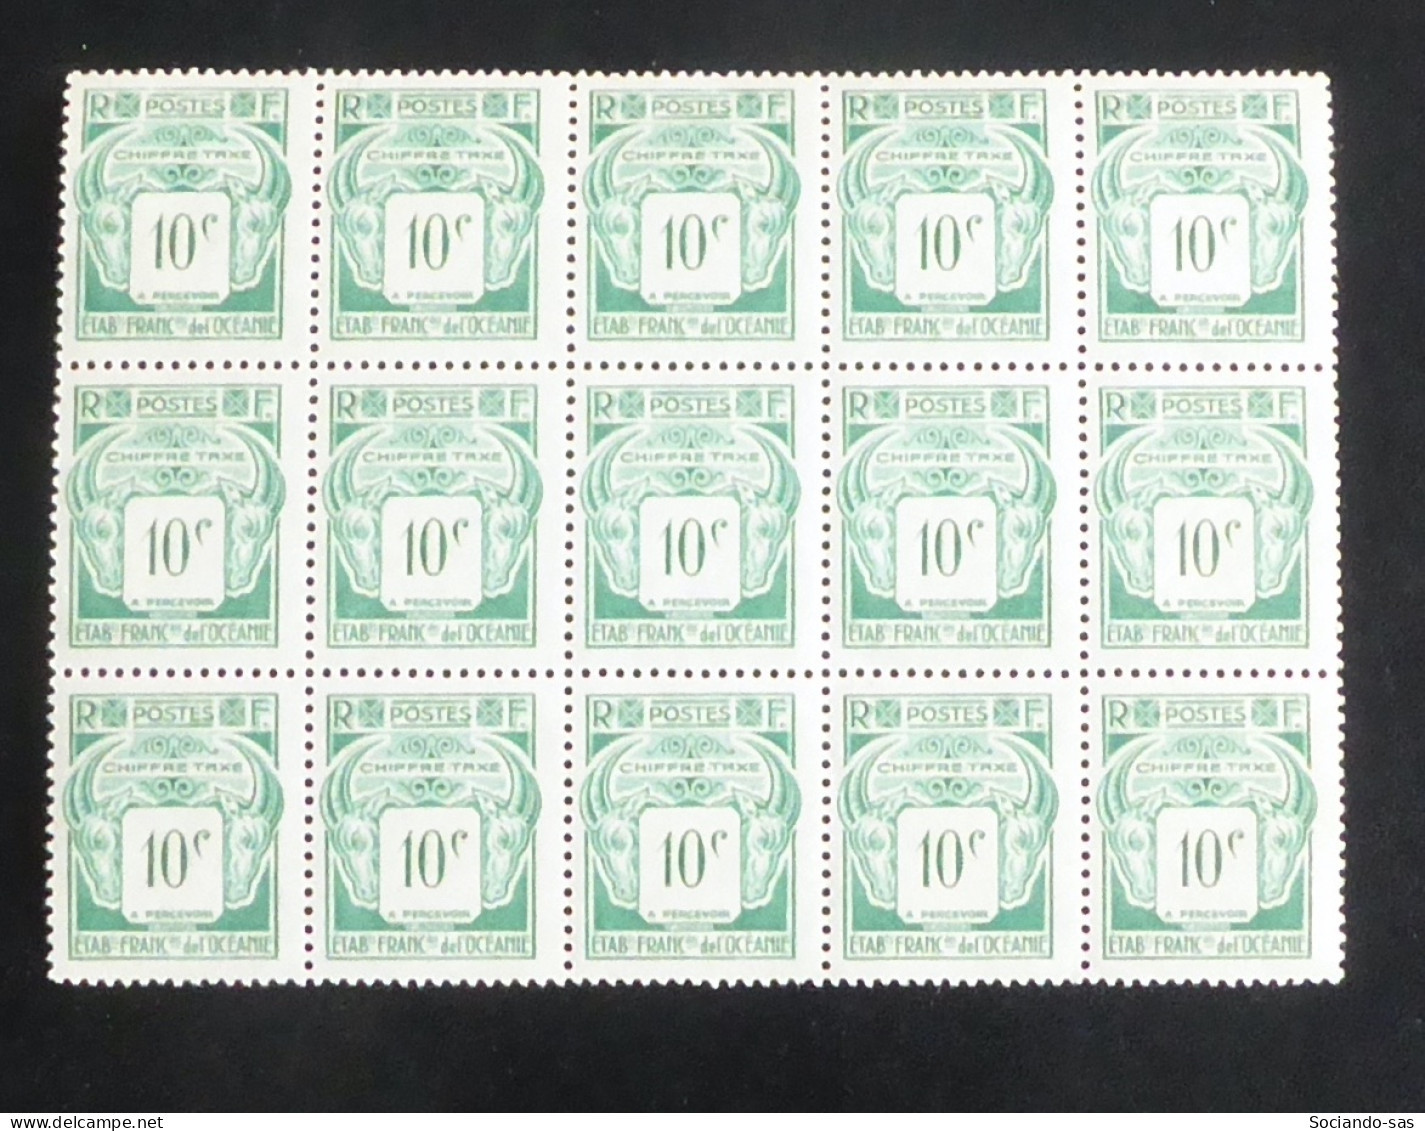 OCEANIE - 1948 - Taxe TT N°YT. 18 - 10c Vert - Bloc De 15 - Neuf Luxe ** / MNH - Portomarken